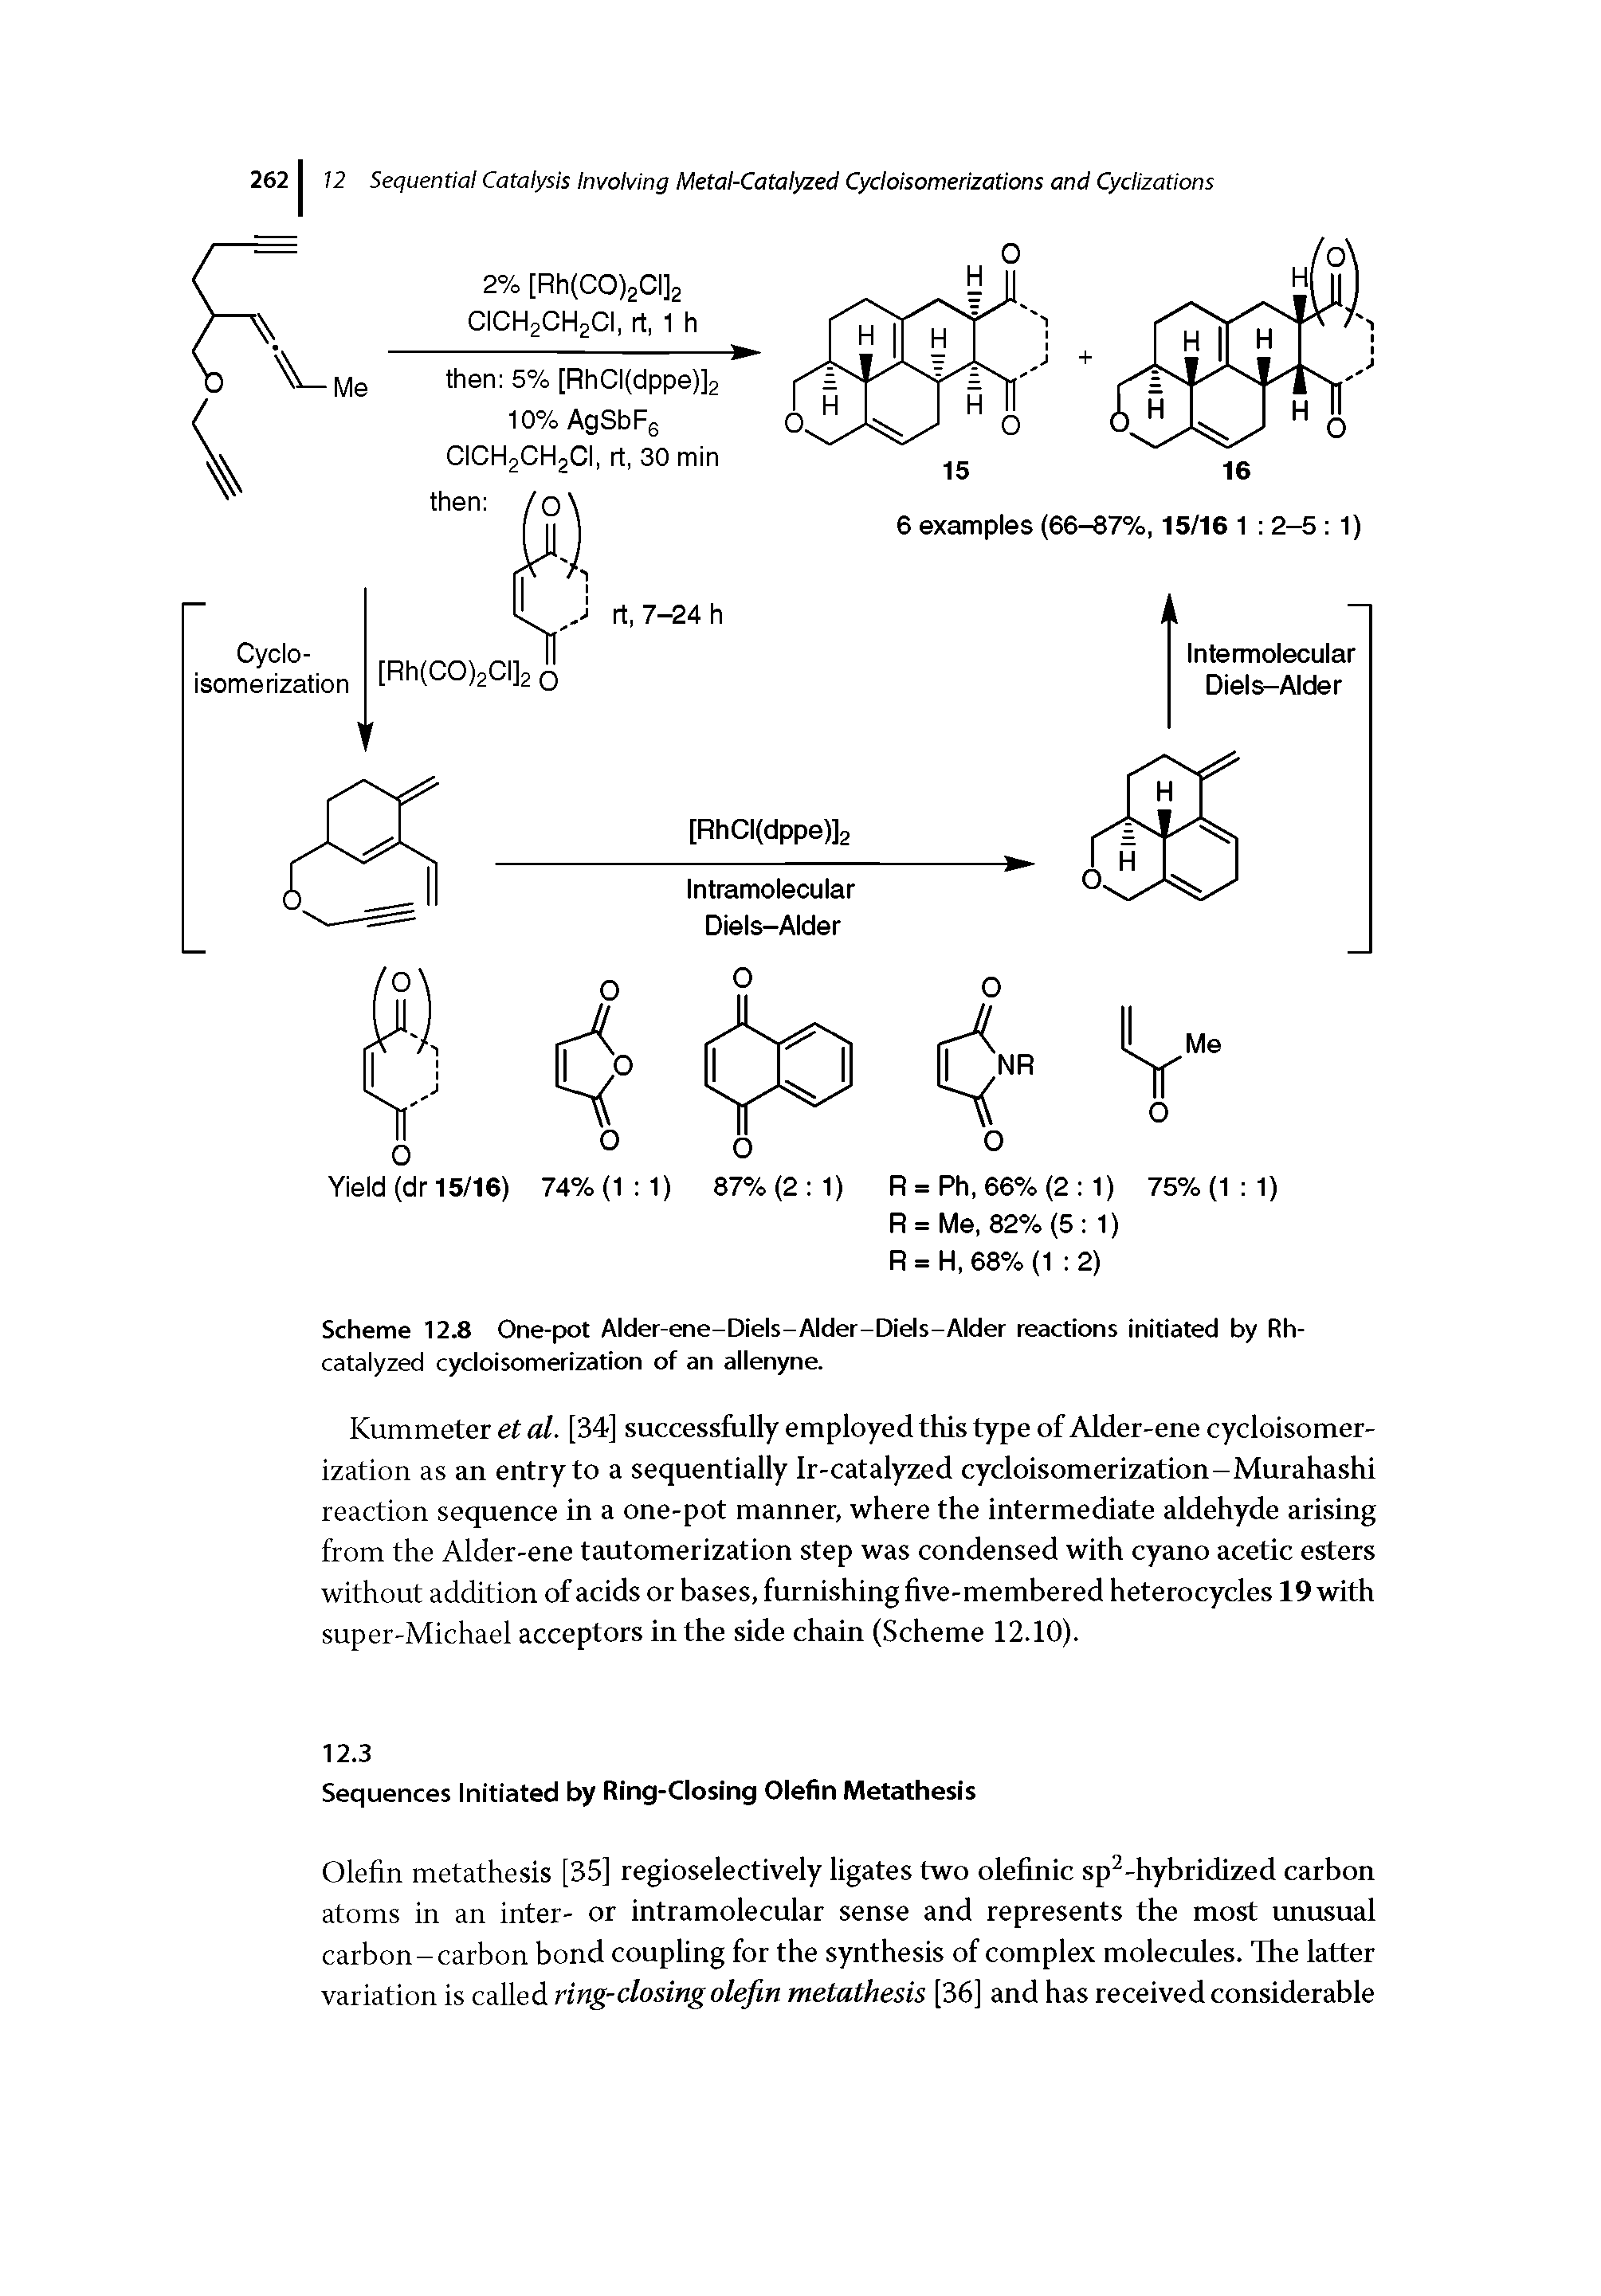 Scheme 12.8 One-pot Alder-ene-Diels-/ lder-Diels-Alder reactions initiated by Rh-catalyzed cycloisomerization of an allenyne.